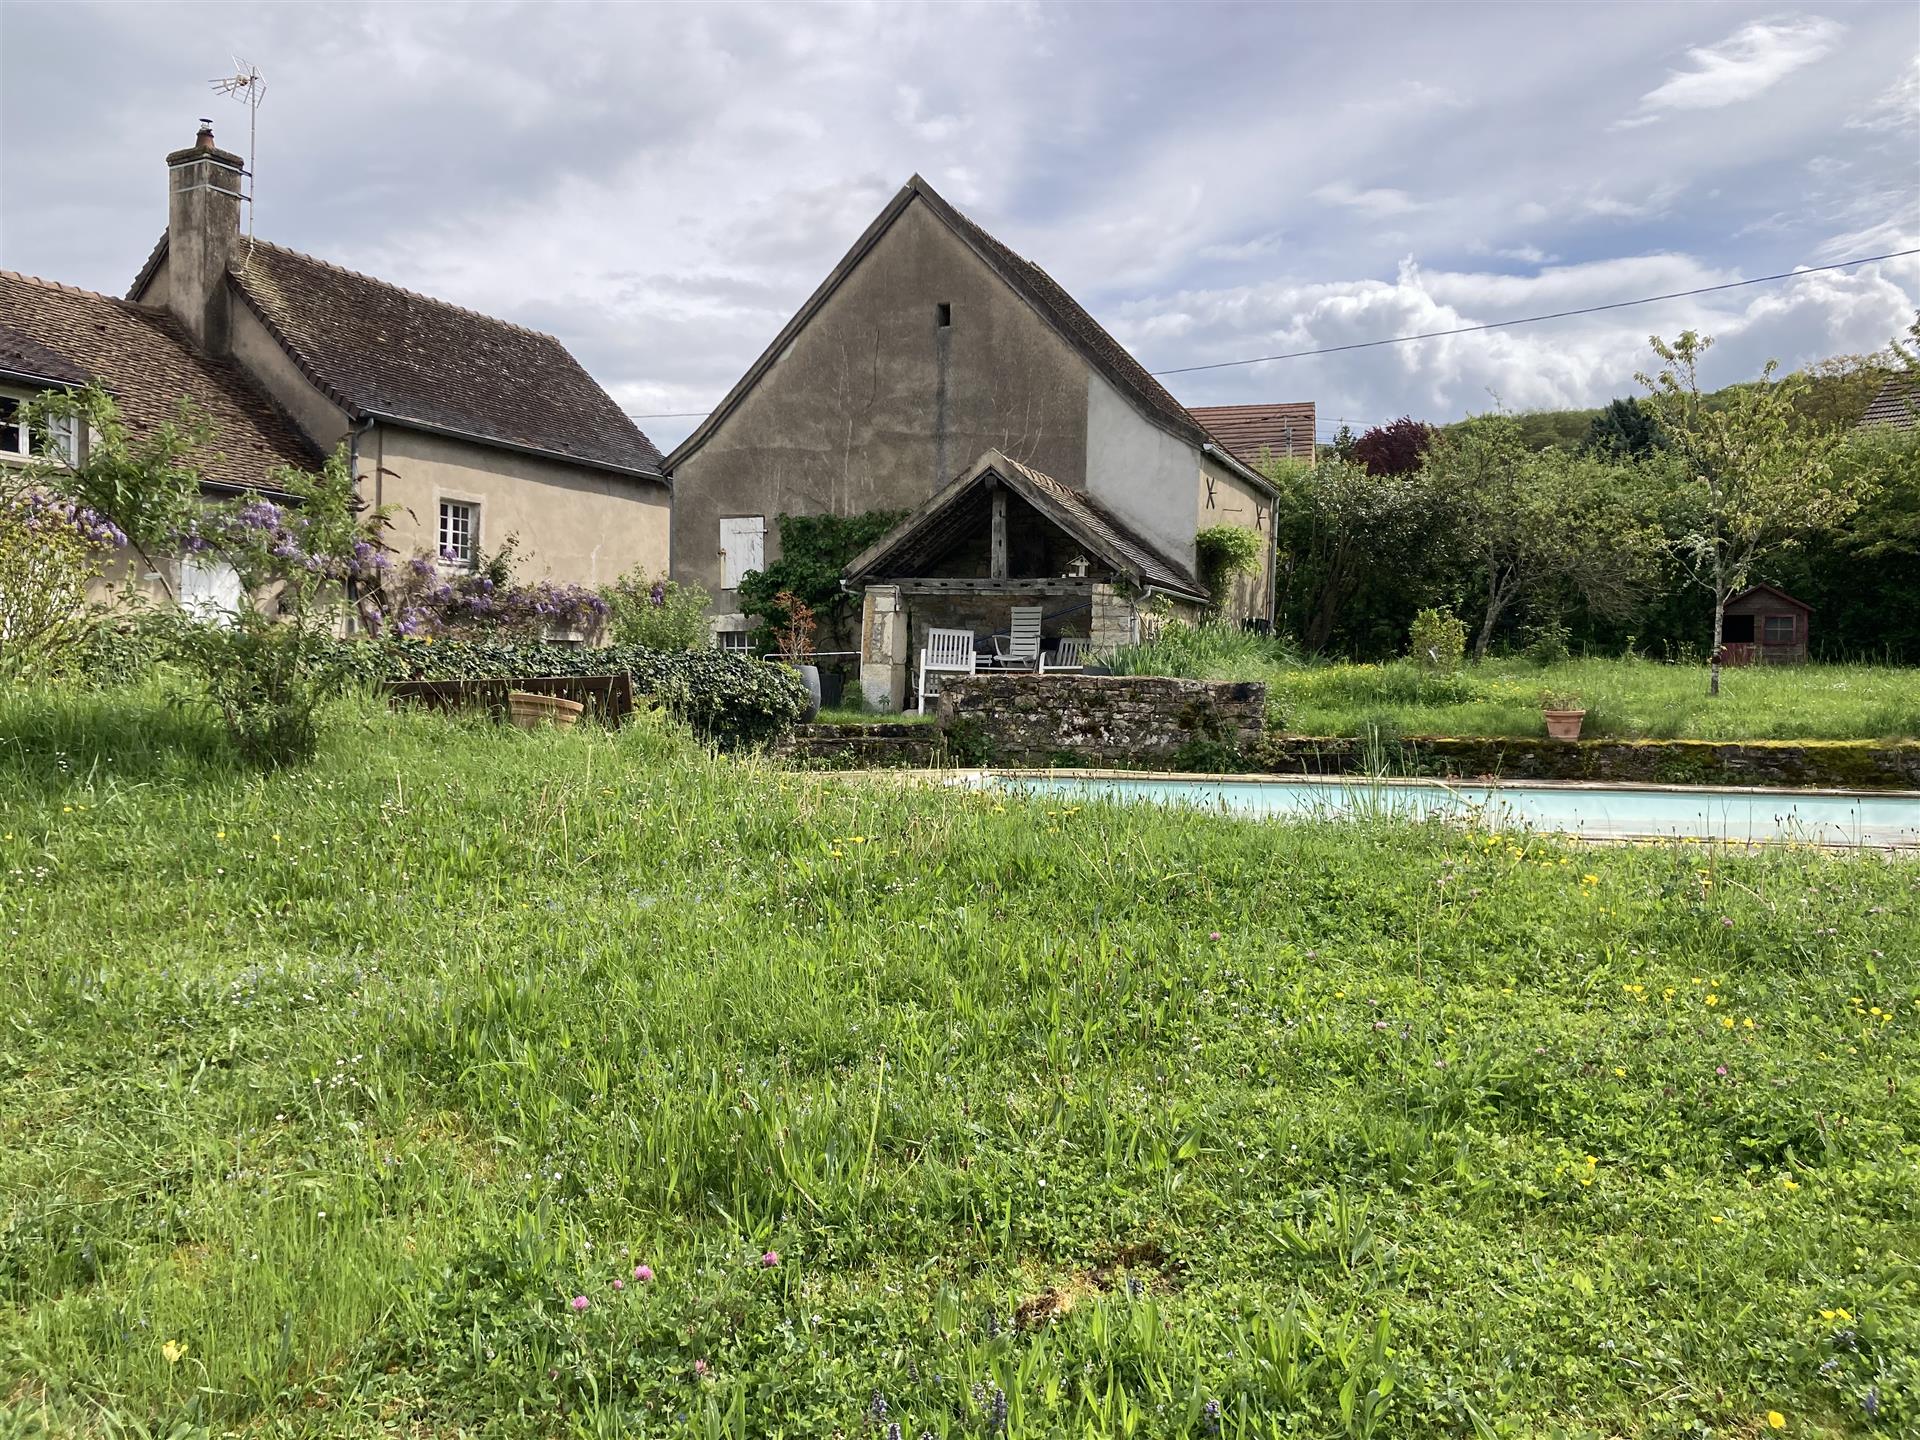  Entre Buxy Et Givry, Bourgogne Cote Chalonnaise, Magnifique ensemble immobilier sur son terrain clo